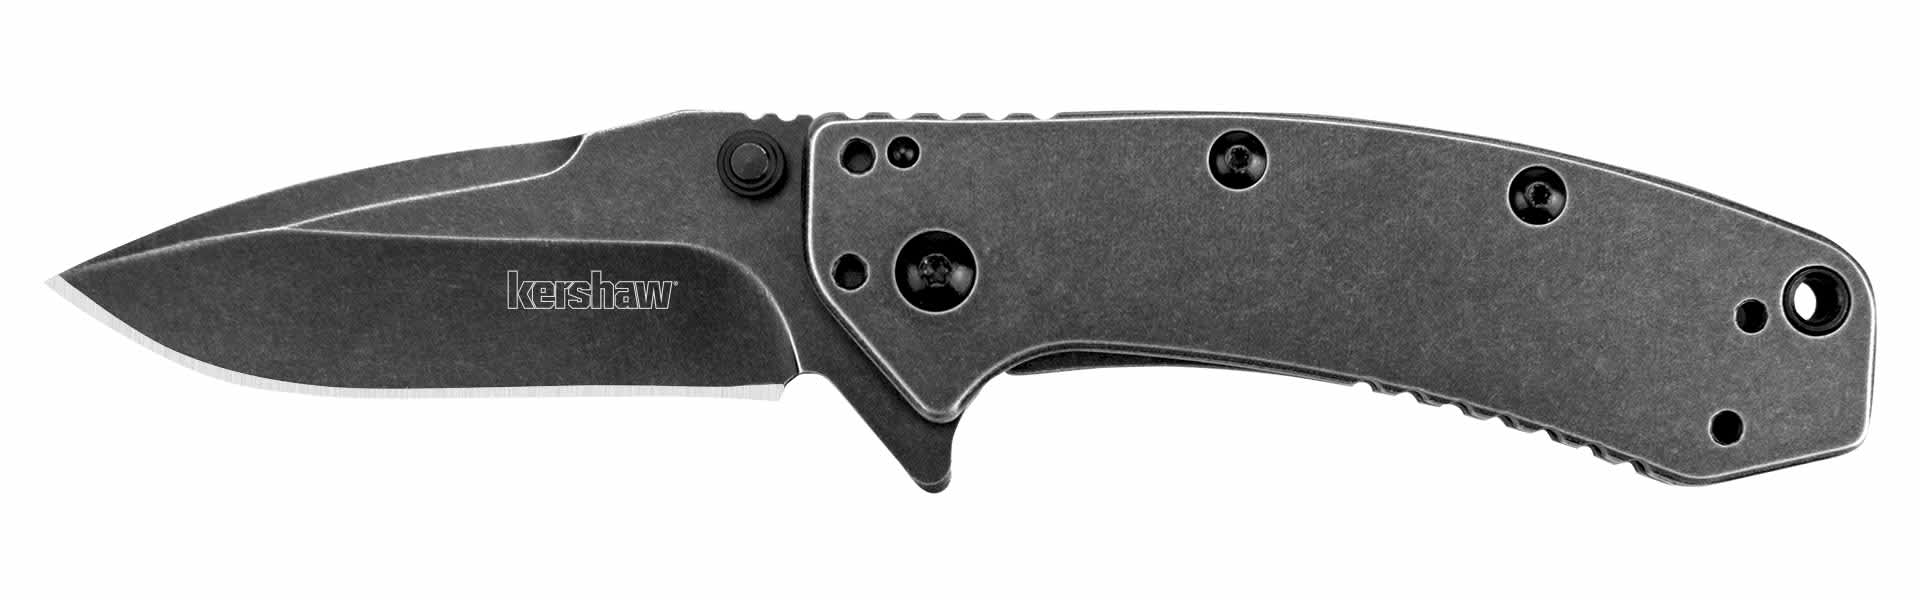 Kershaw® Cryo Blackwash Assisted Blade Folding Knife